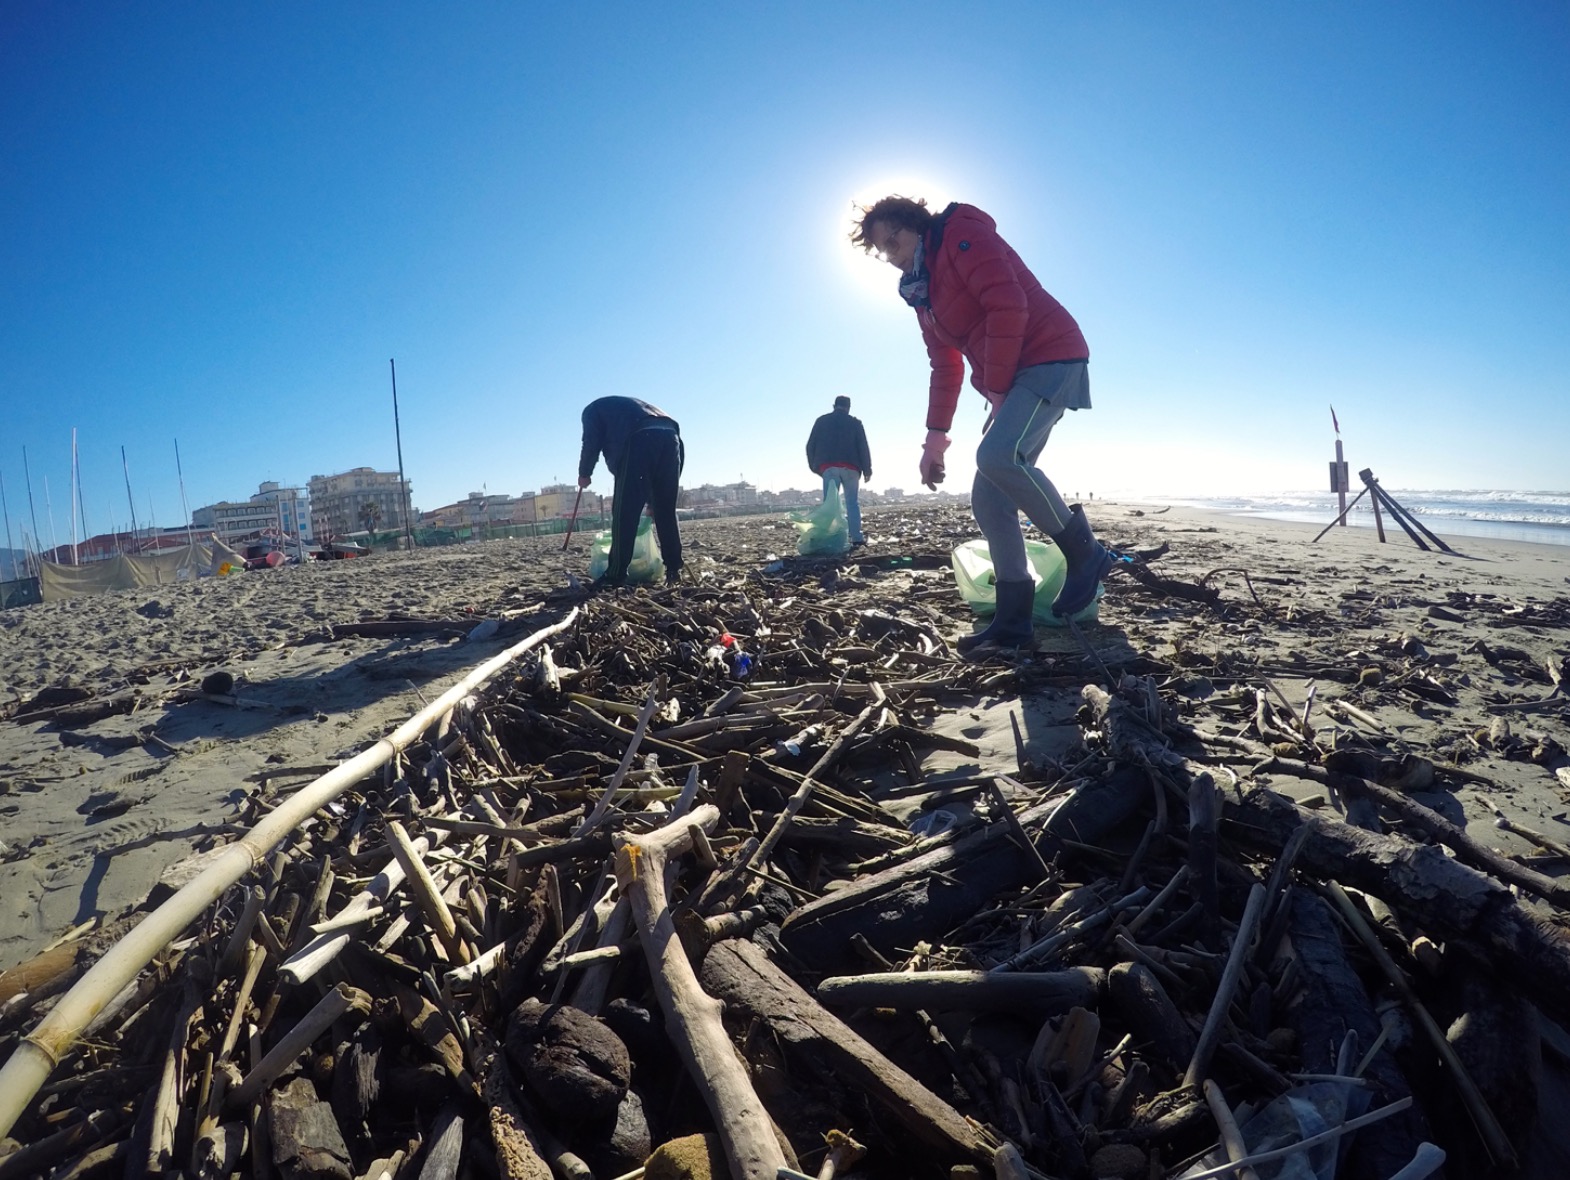 La spiaggia di Lido di Camaiore torna pulita